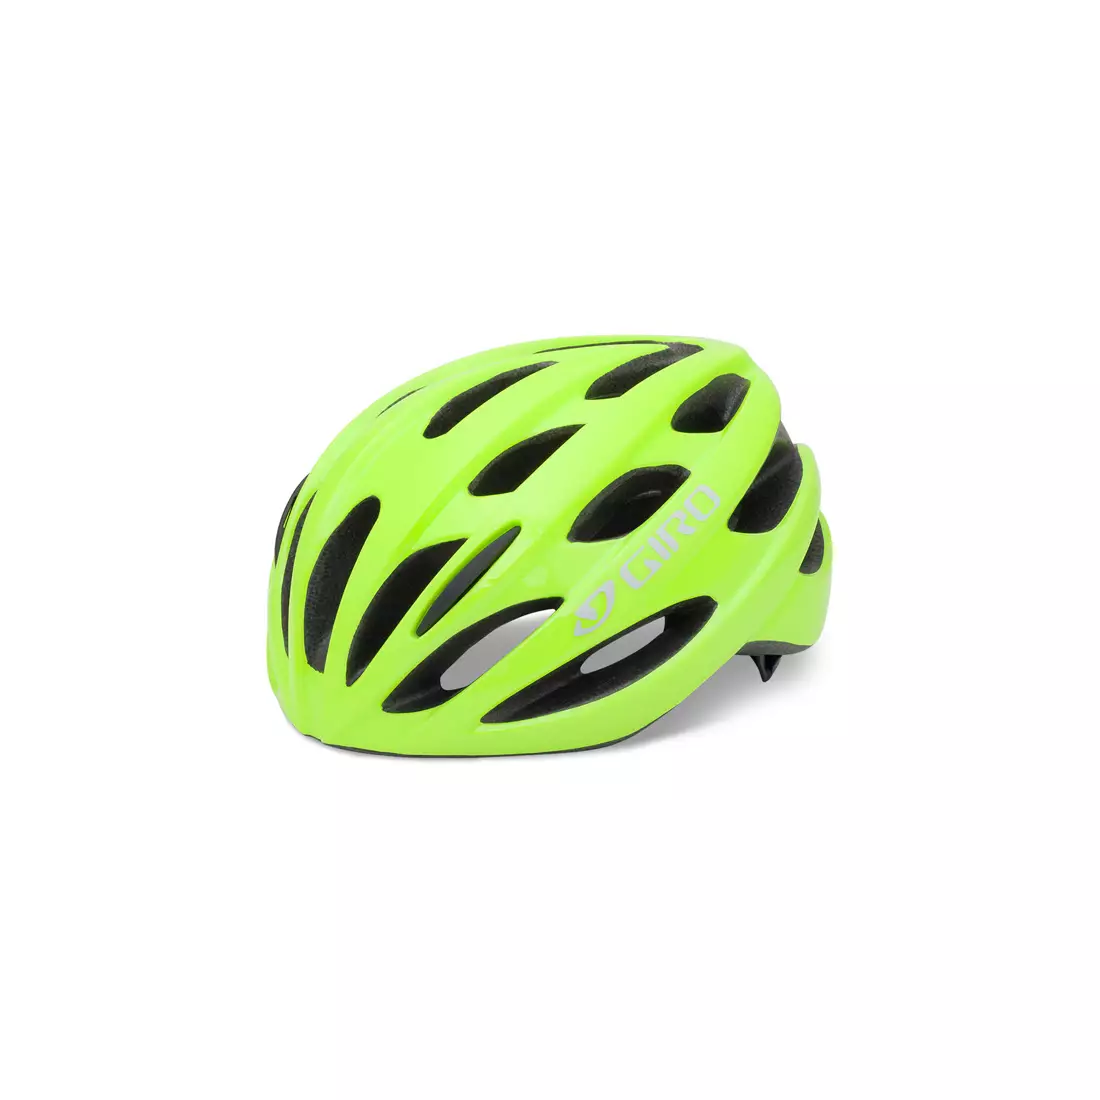 Cyklistická prilba GIRO TRINITY fluorescenčná